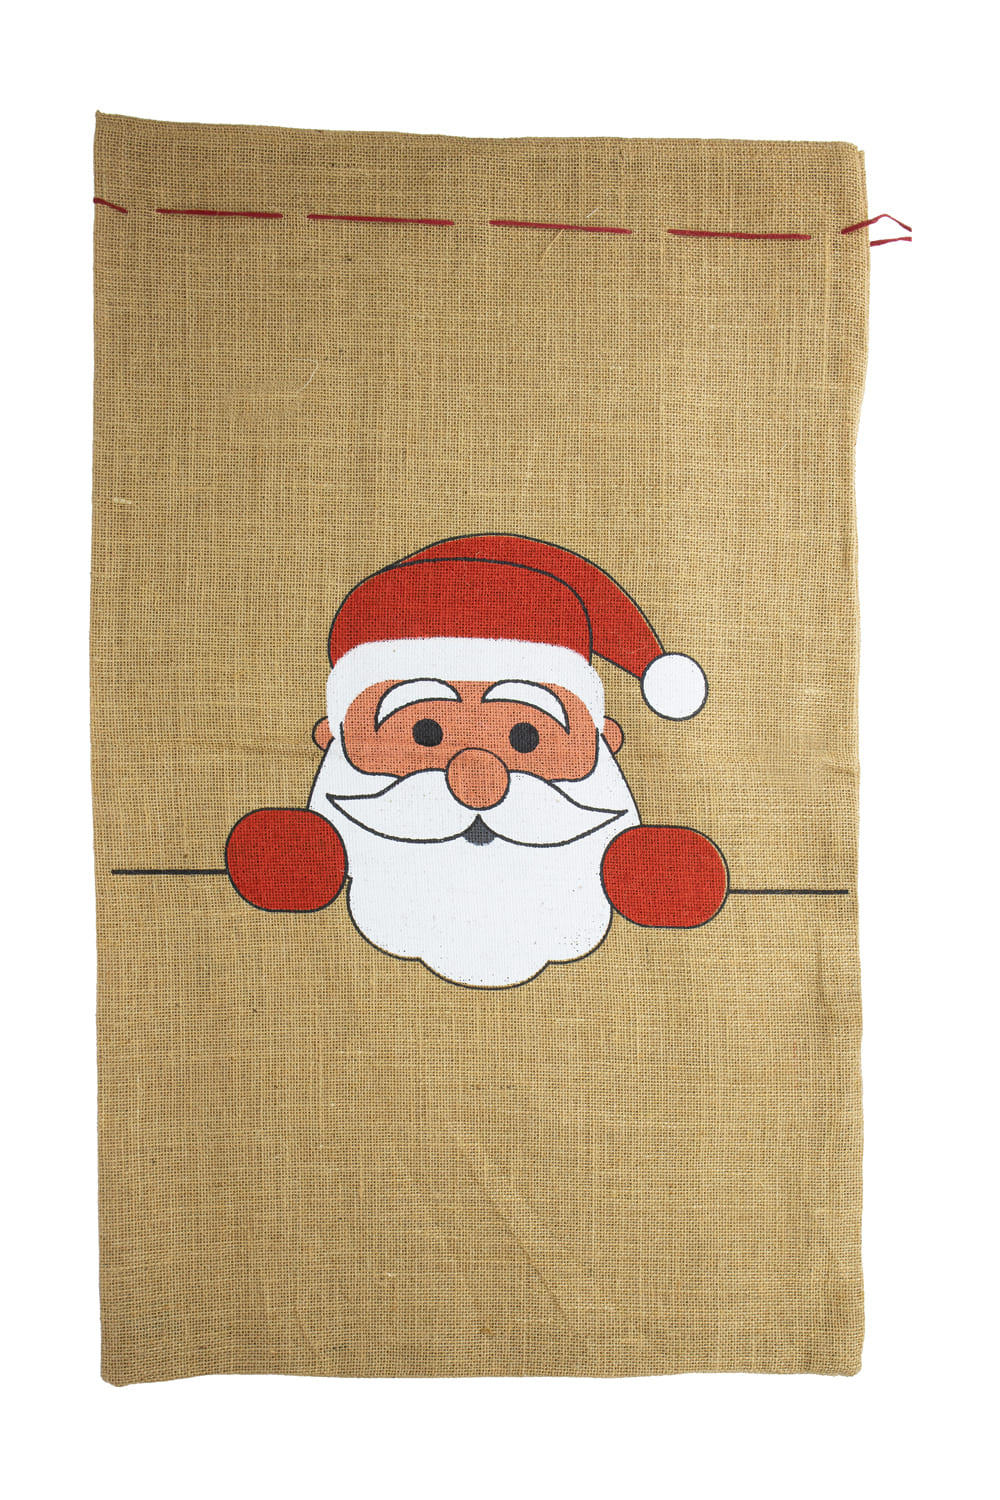 Der Chlaussack ist aus Jute und ist ca. 50 x 80 cm gross. Auf dem Jutesack ist ein Samichlaus aufgedruckt. Eine originelle und beliebte Geschenkverpackung fuer den Samichlaus Tag und die Weihnachtszeit. Einfach mit Leckereien und kleinen Geschenken befuellen!!